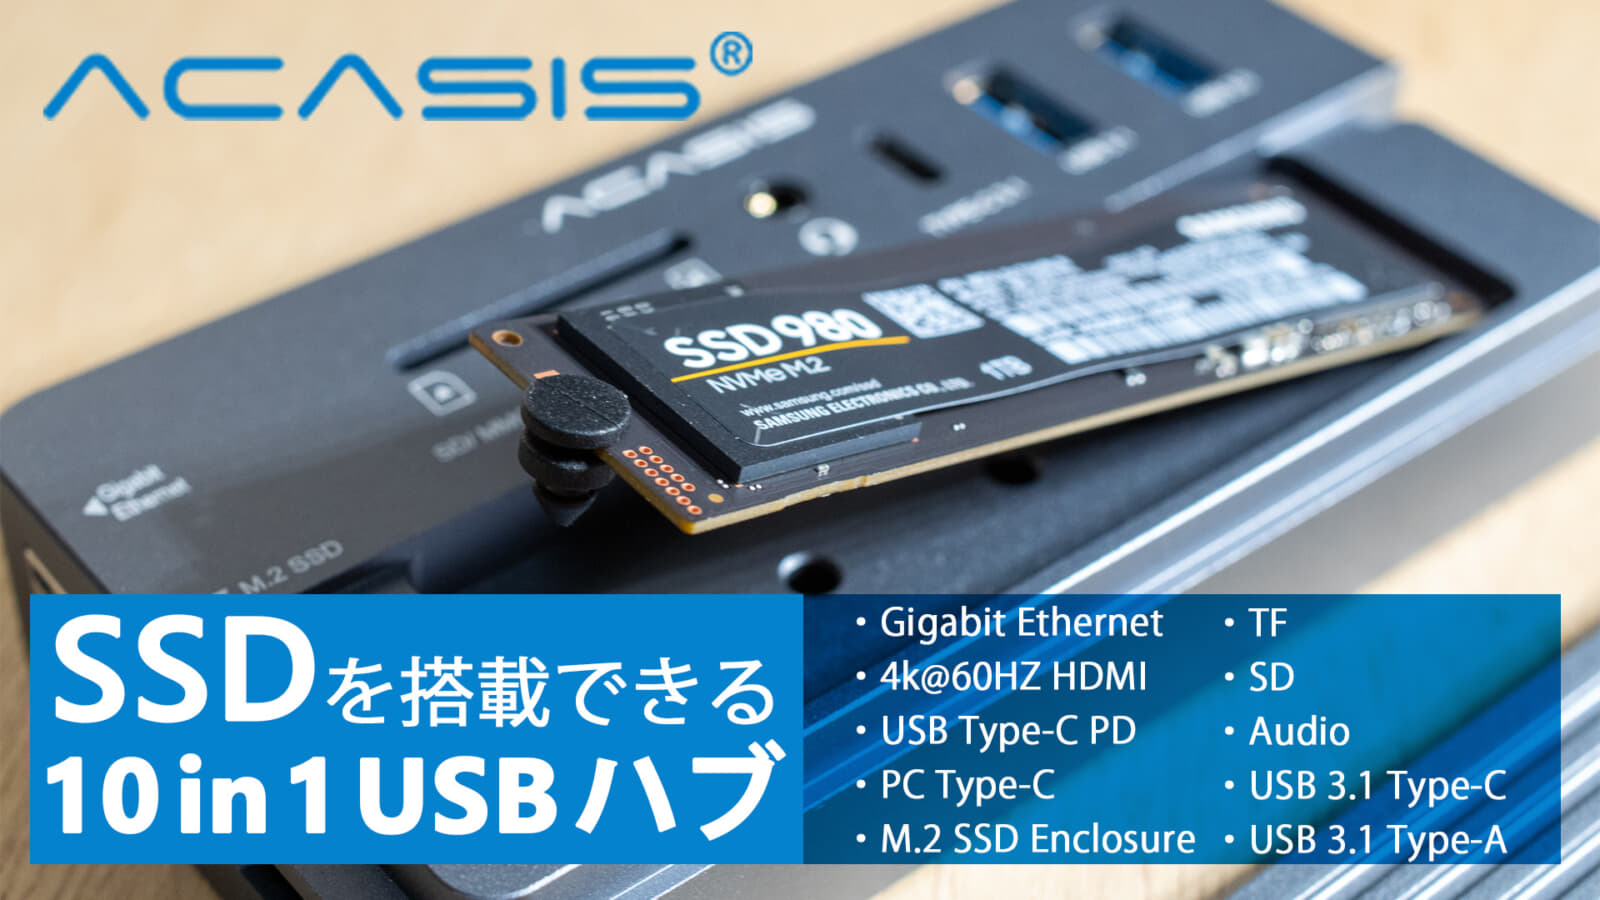 10 in 1 多機能USBハブ ACASIS、M.2スロット内蔵のSSDケース機能を搭載